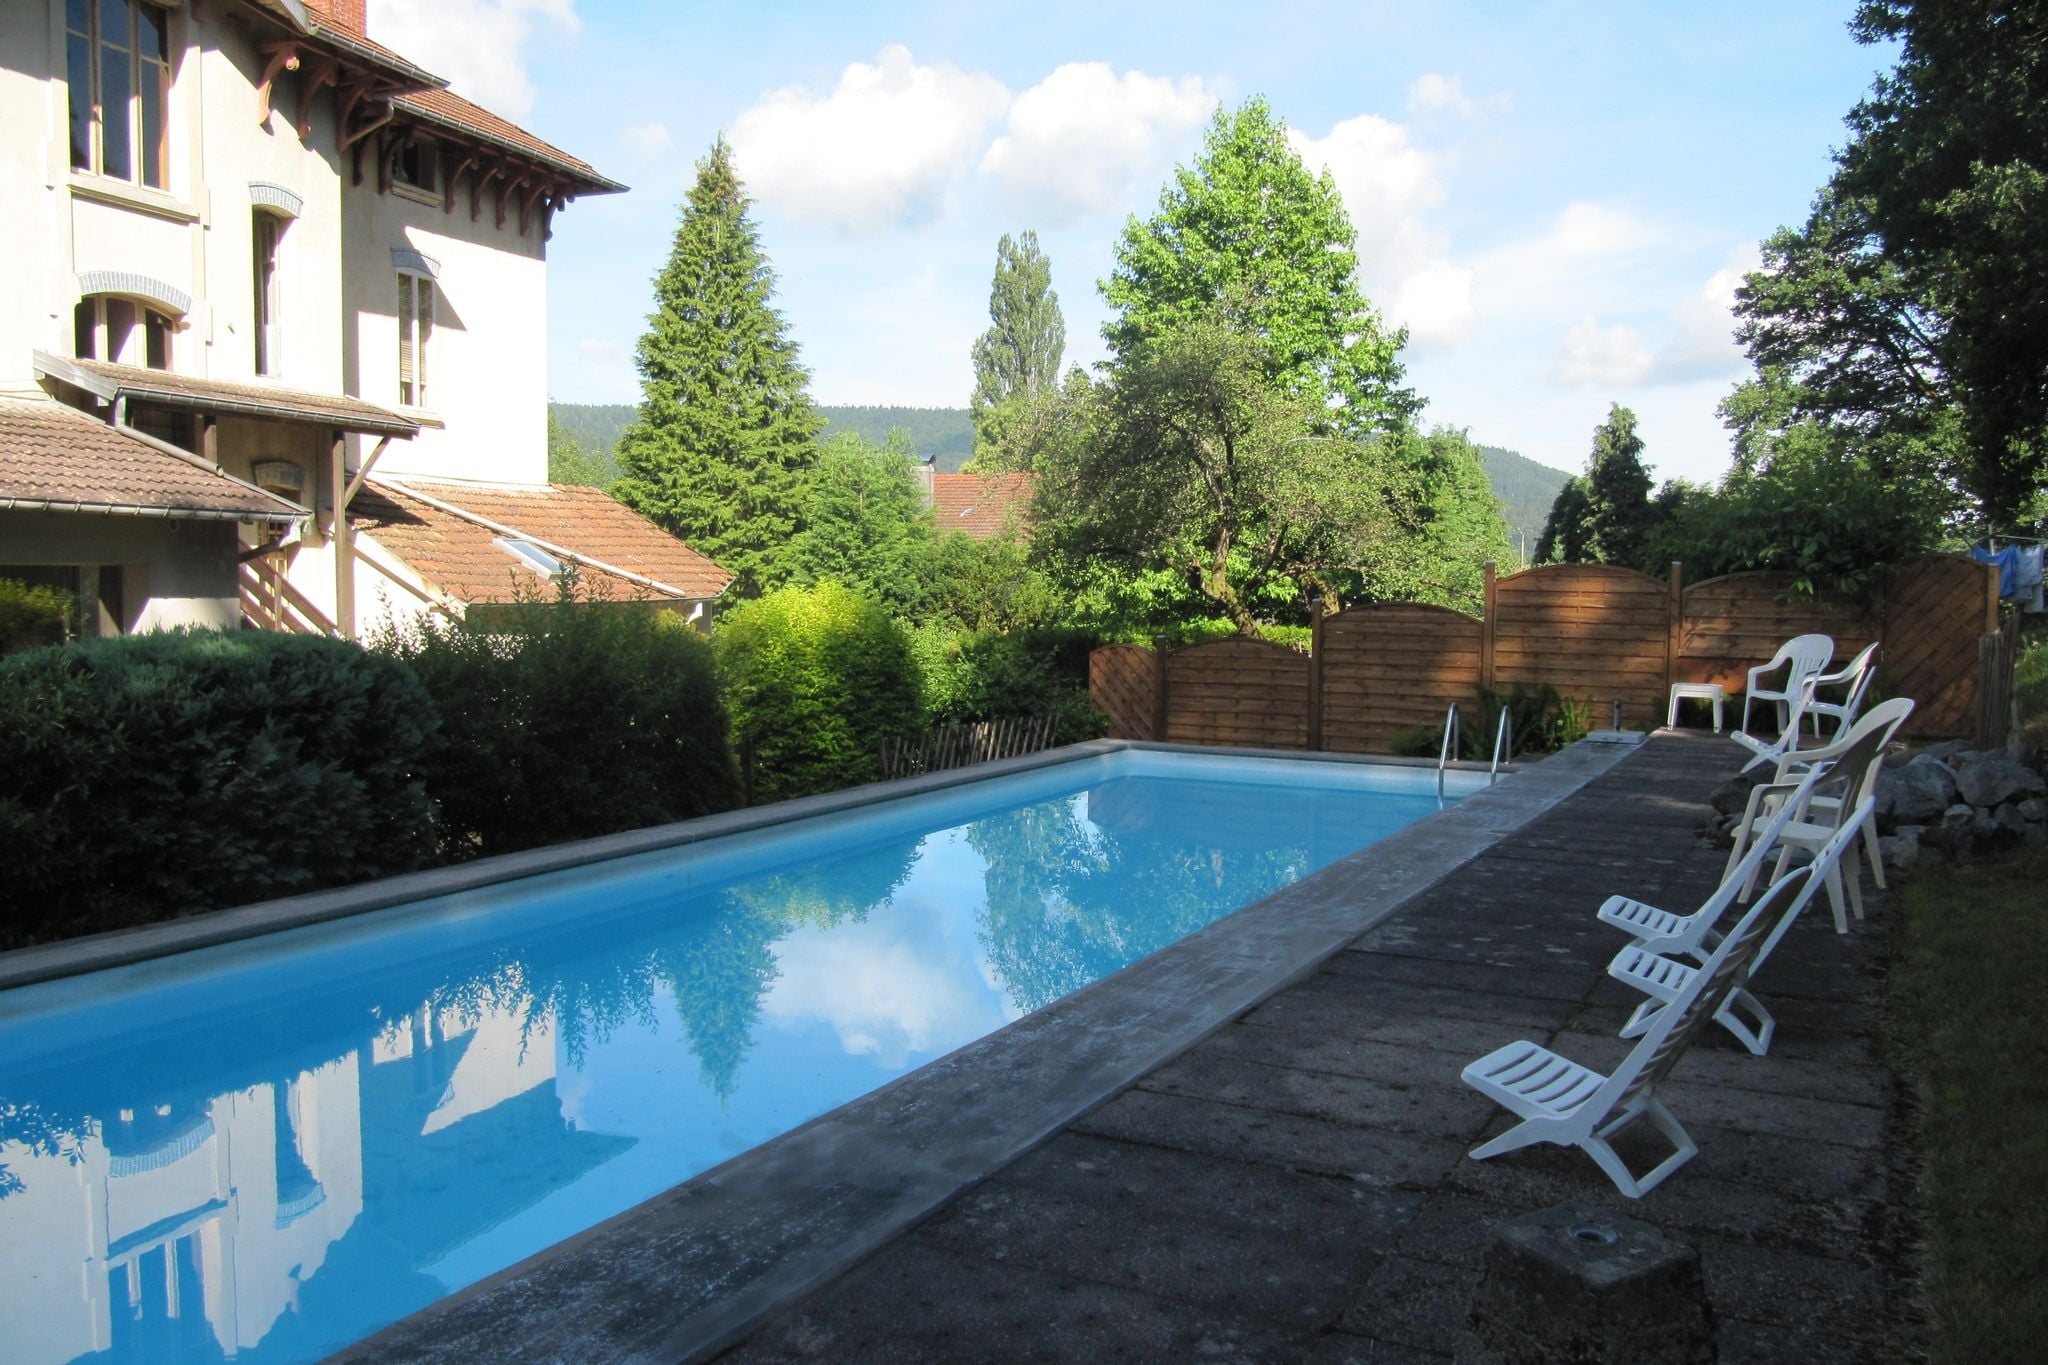 Charmante vakantiewoning met zwembad en privé tuin centraal gelegen in Vogezen